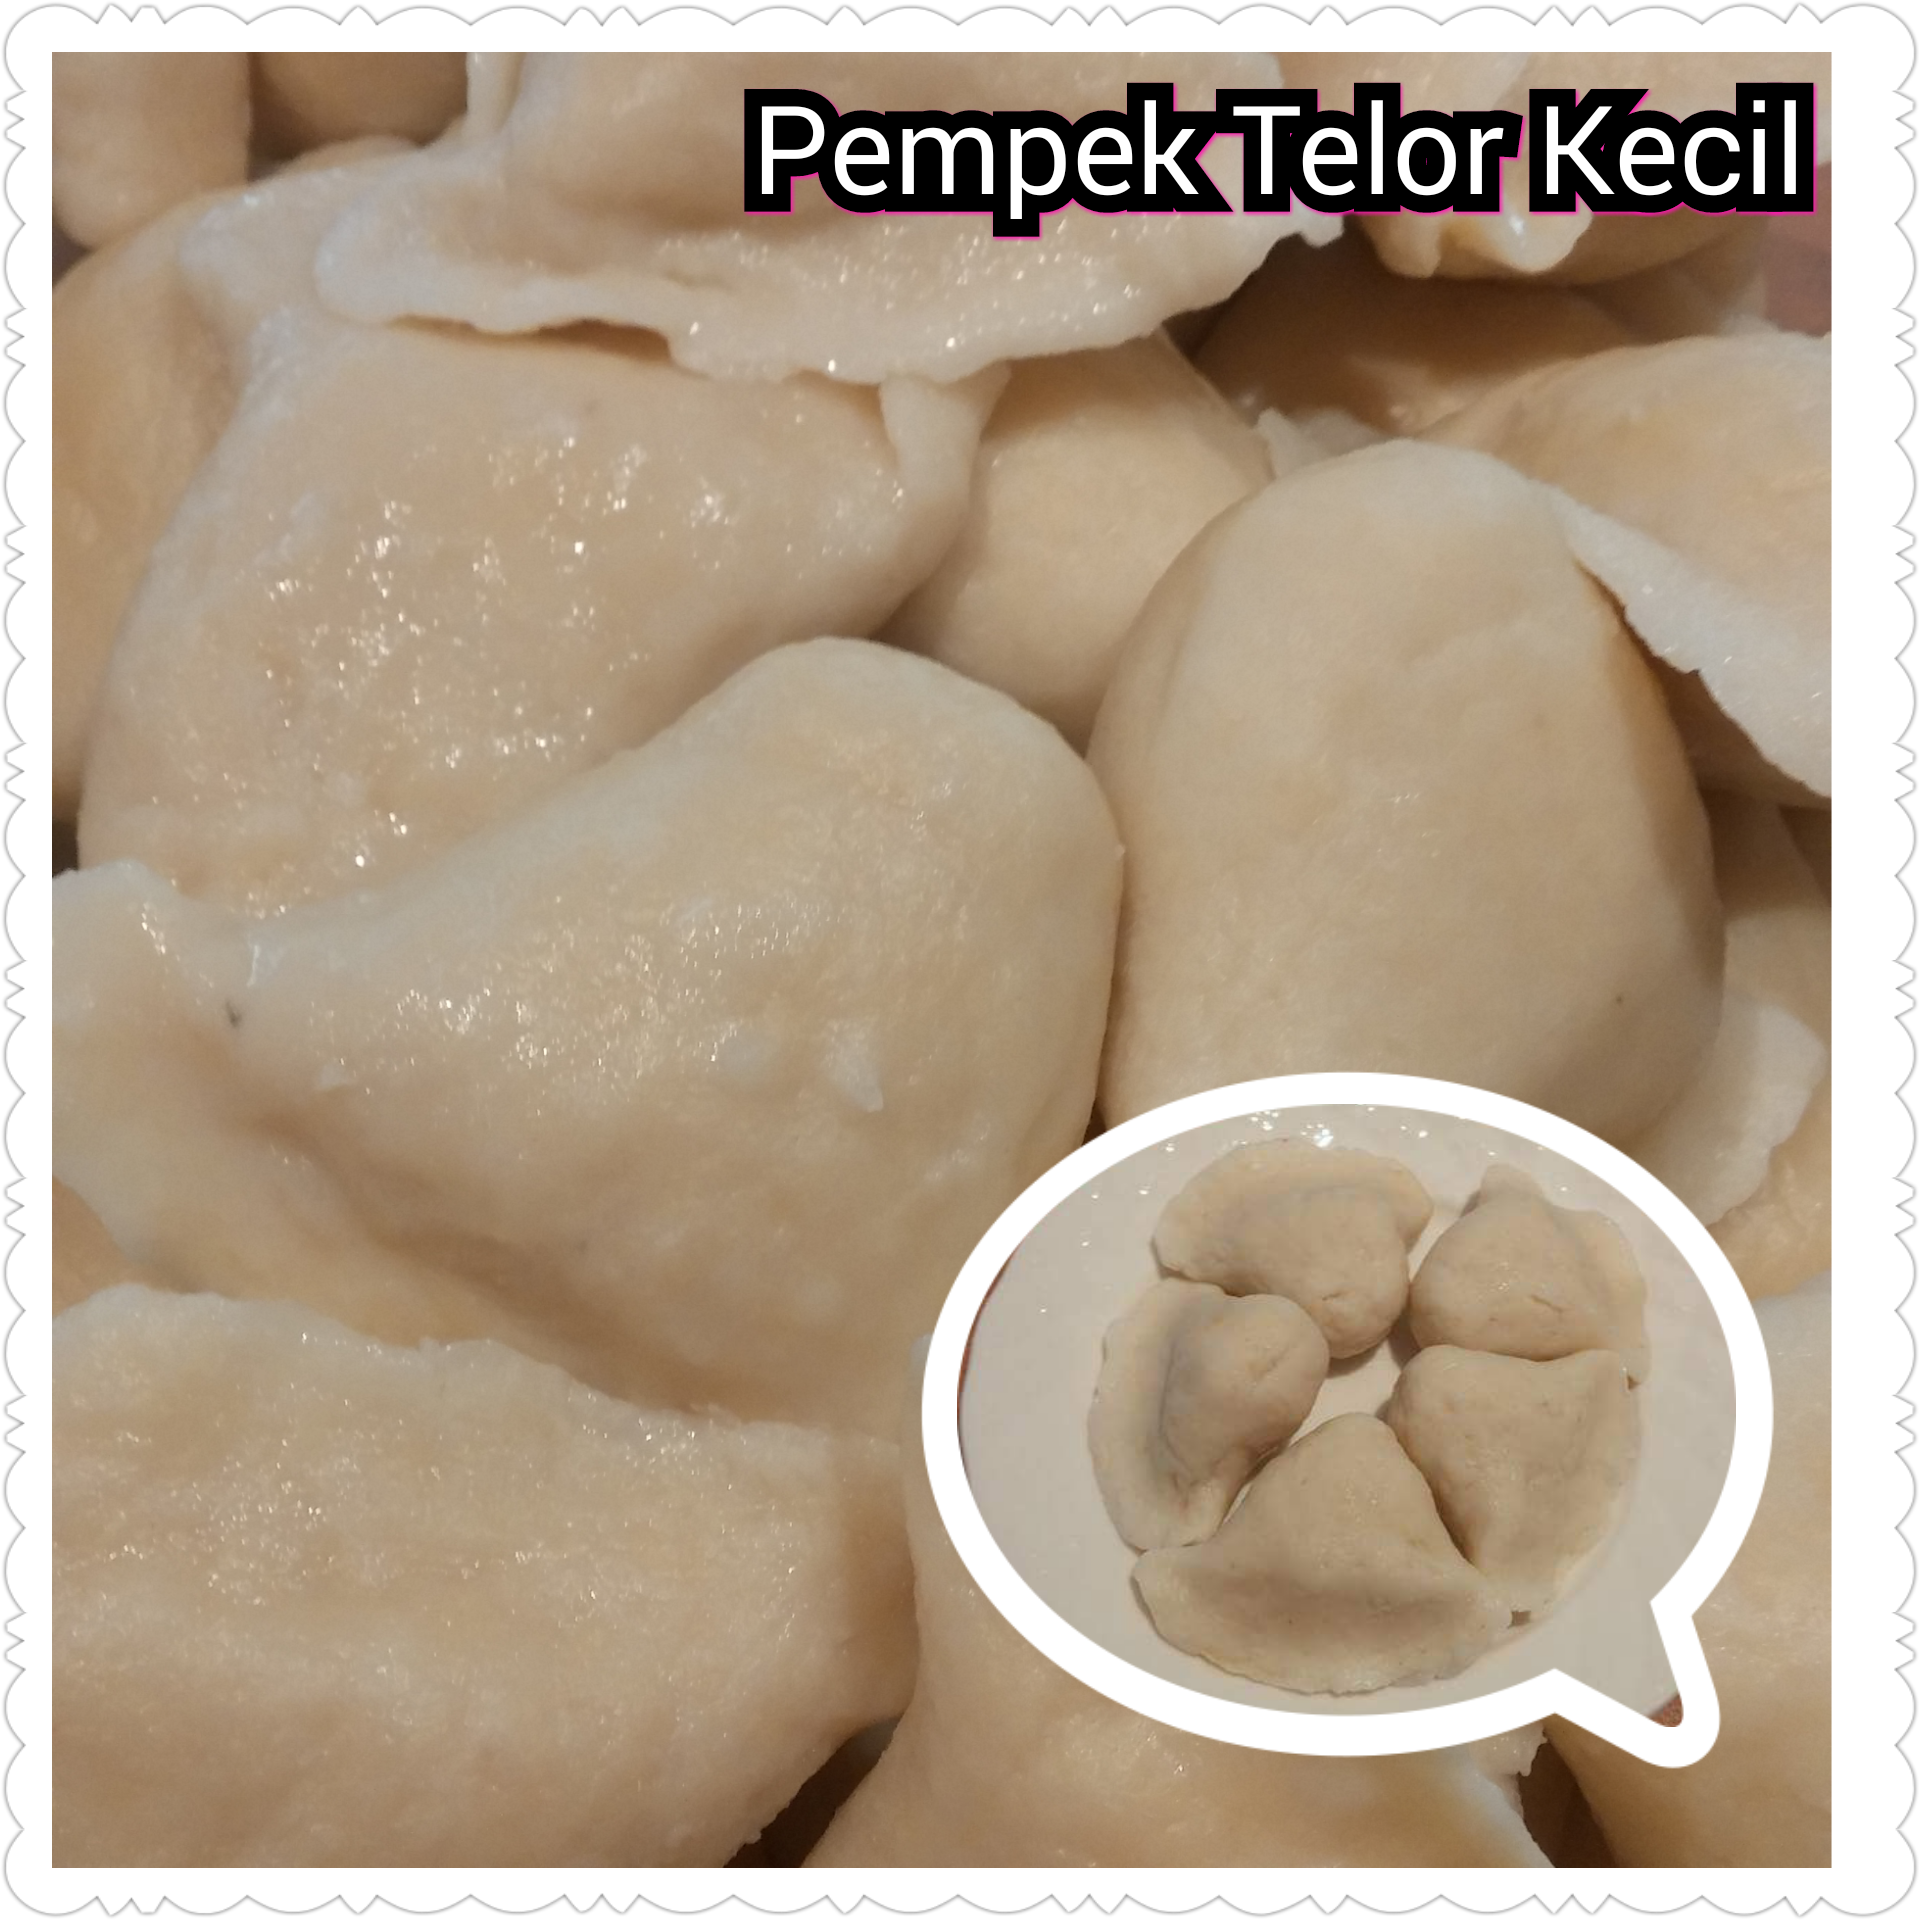 Paket Pempek Telur Kecil (Palembang Fish cake filled with a whipped egg mix) - In Stock